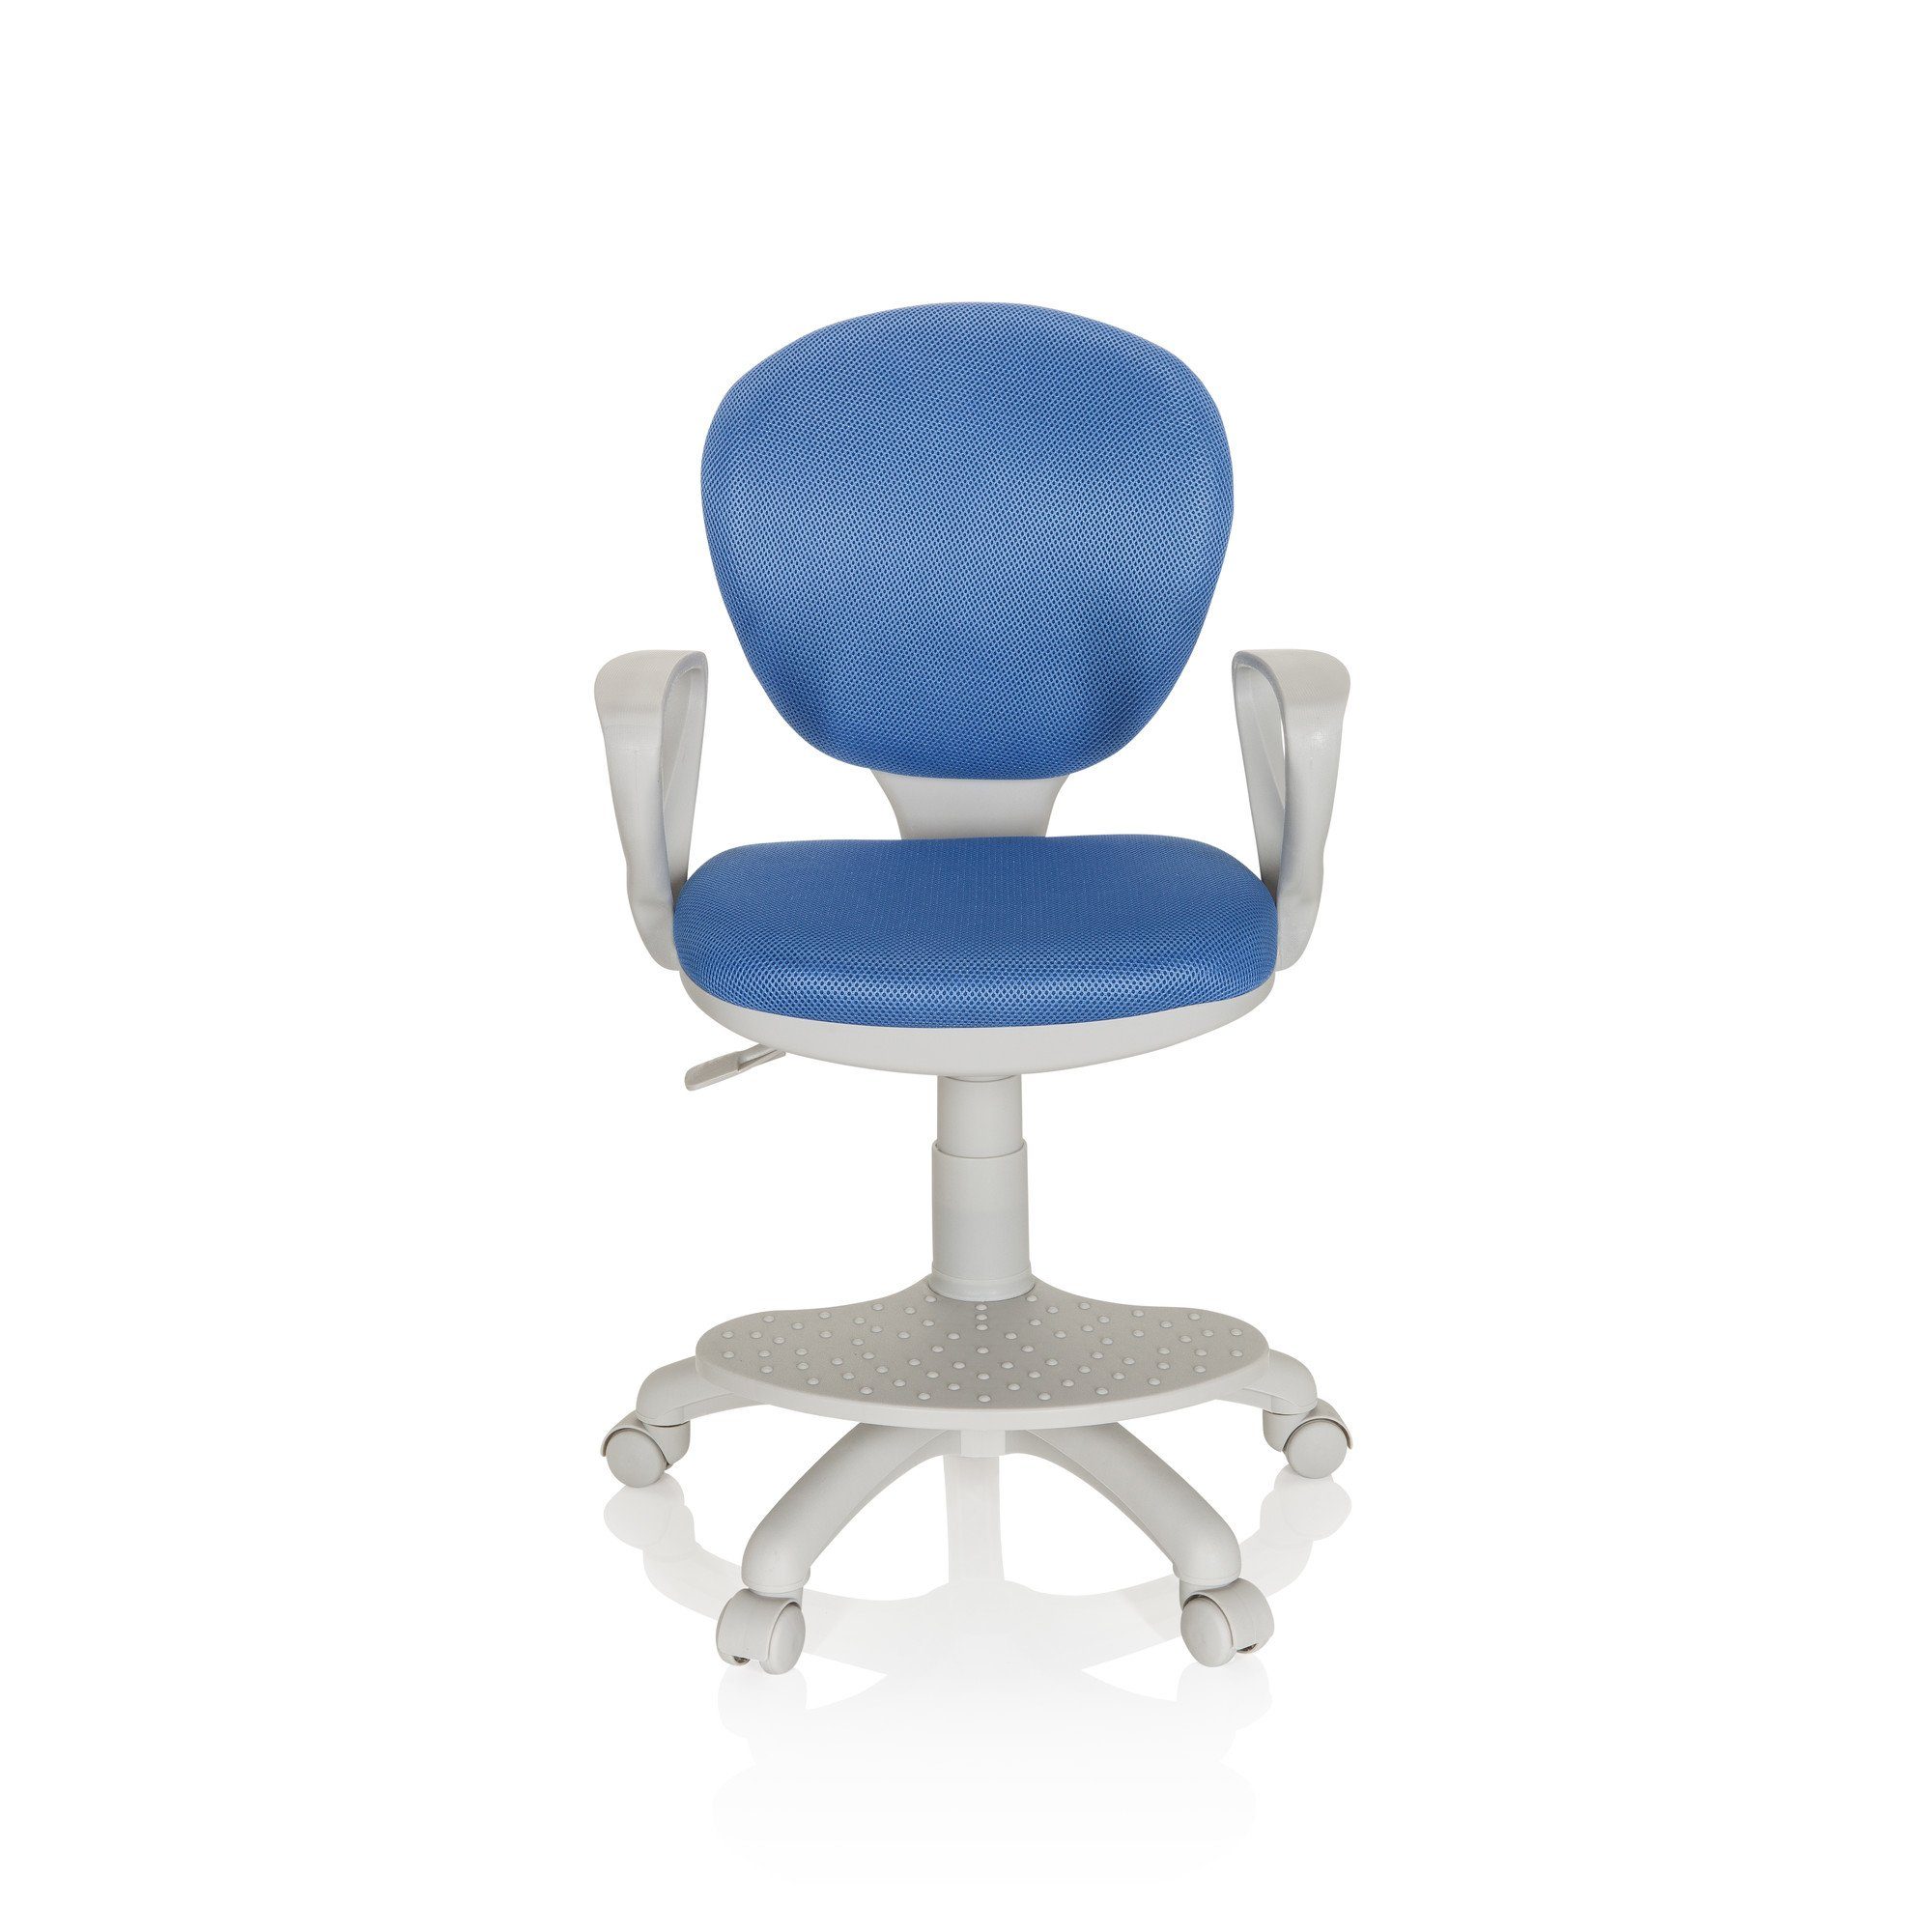 Berühmte Luxusmarke hjh OFFICE Drehstuhl Kinderdrehstuhl KID ergonomisch mitwachsend, COLOUR mit Blau/Grau Armlehnen Stoff St), G1 (1